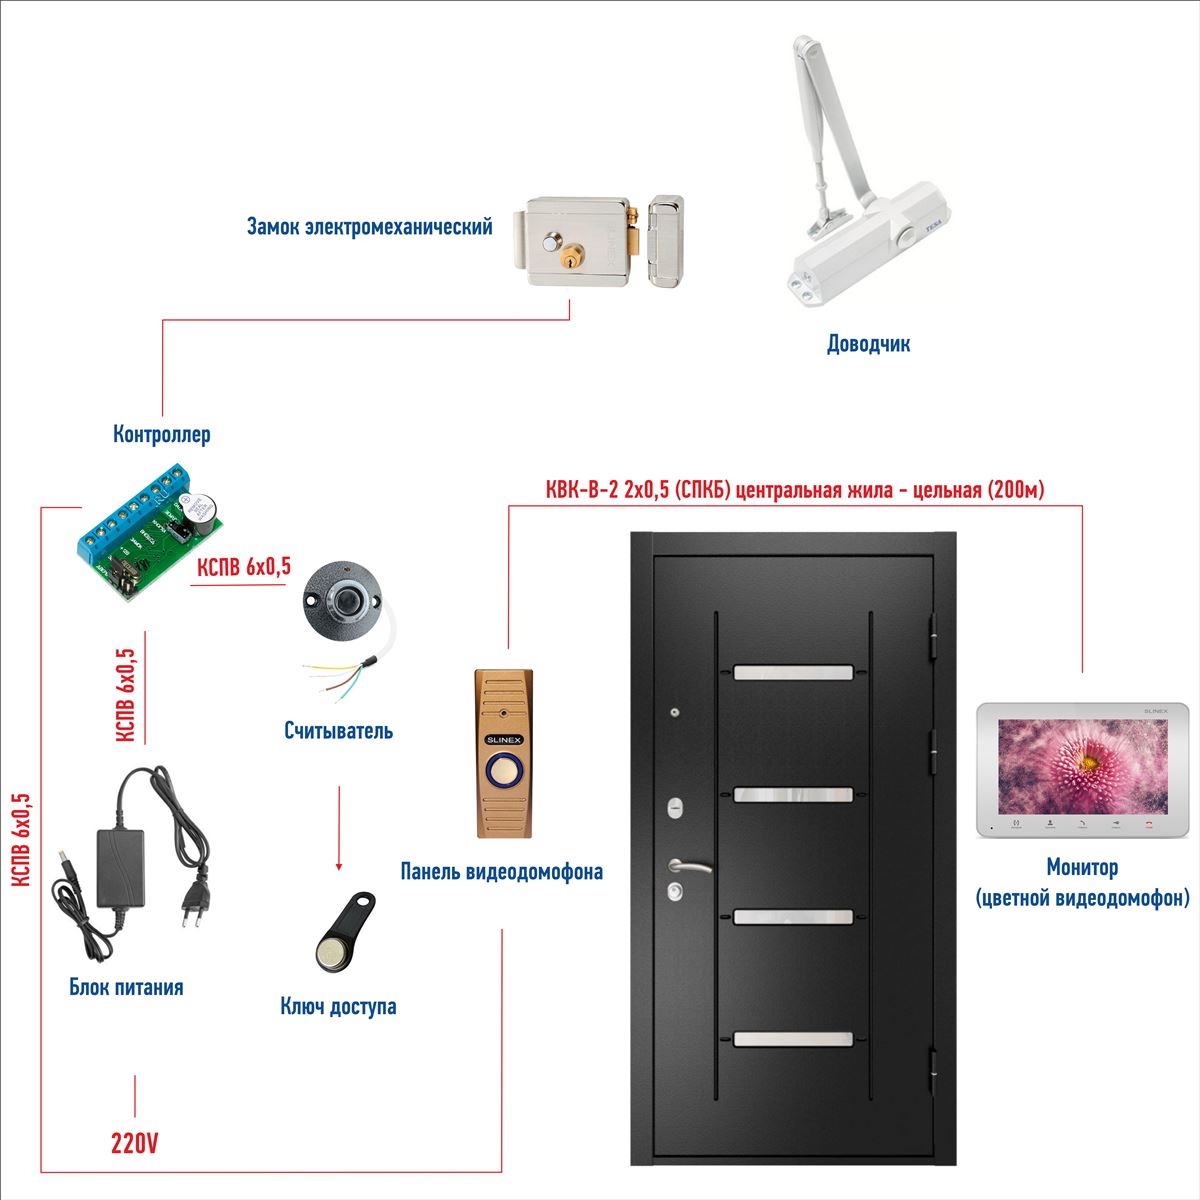 Автономная система контроля доступа на одну дверь с электромагнитным замком и аудиодомофоном